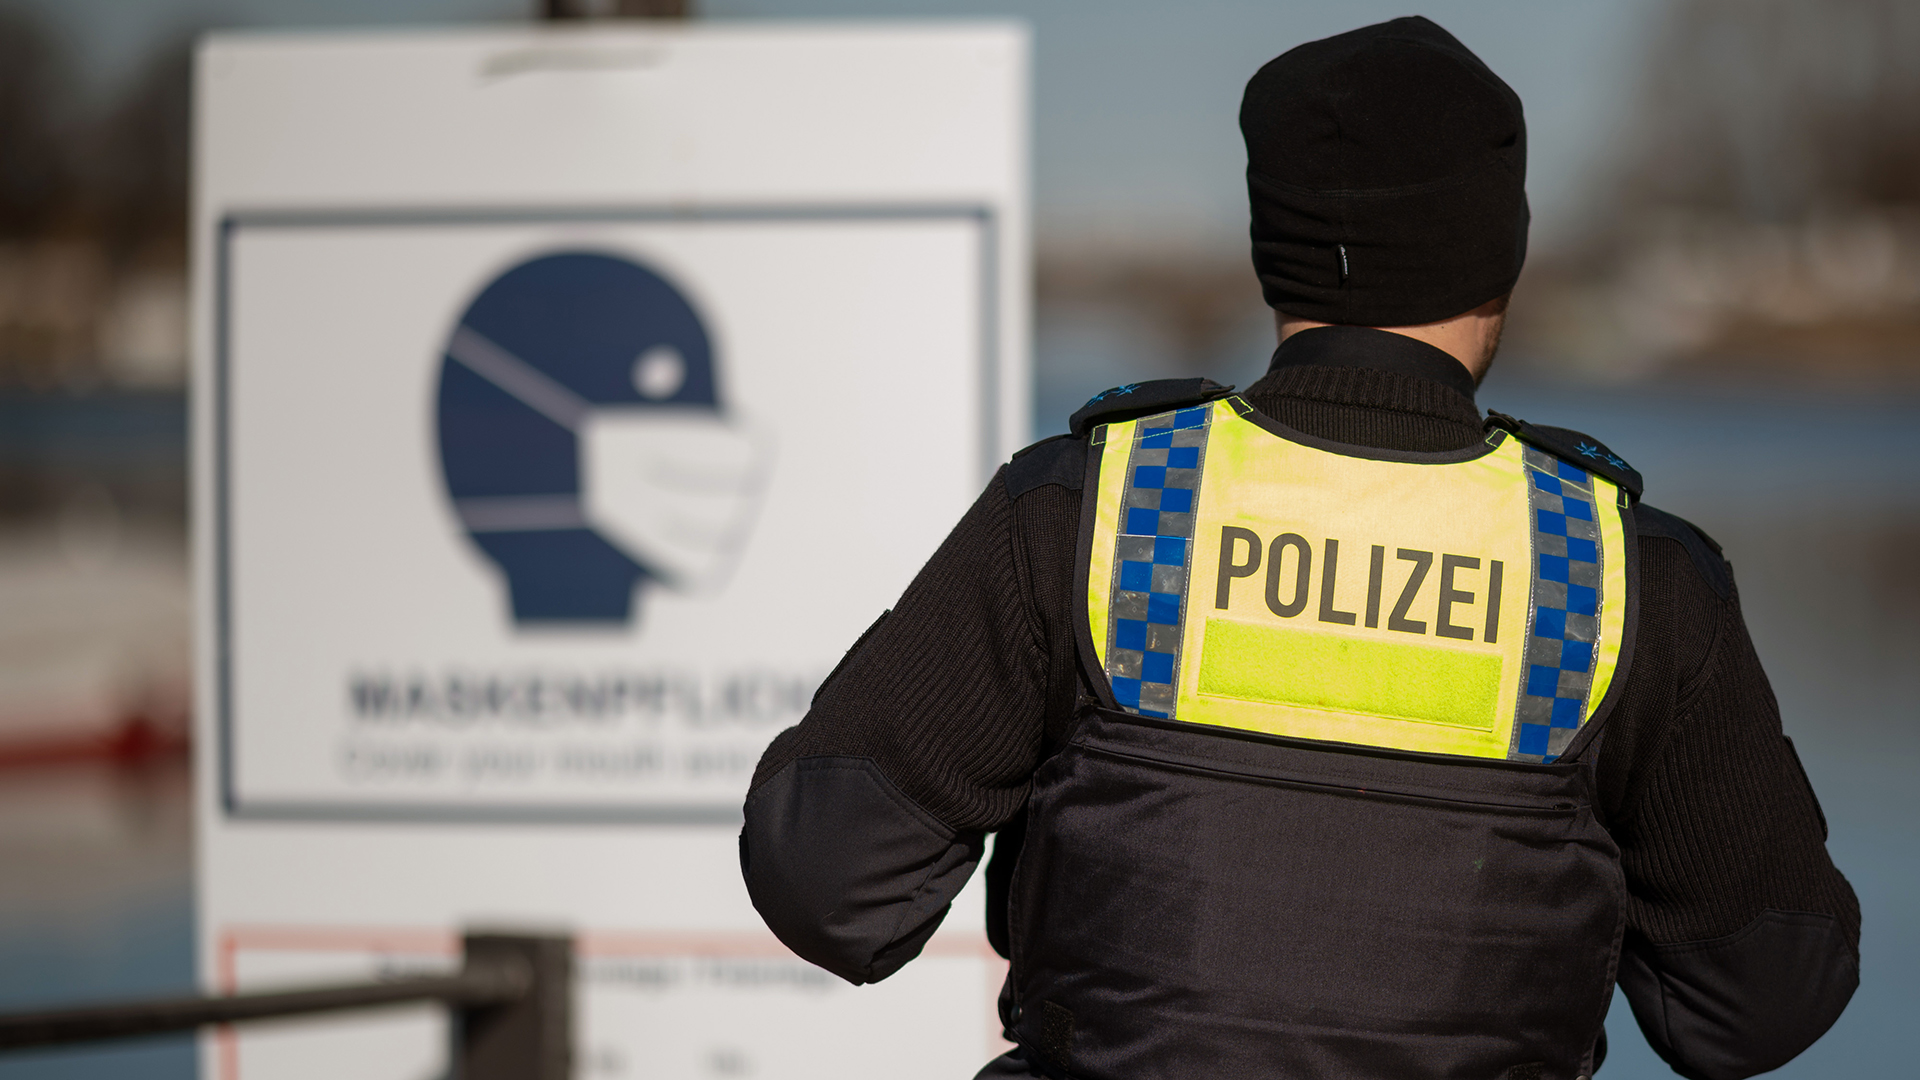 Herausfinden account kann instagram polizei fake Identitätsdiebstahl: Fake